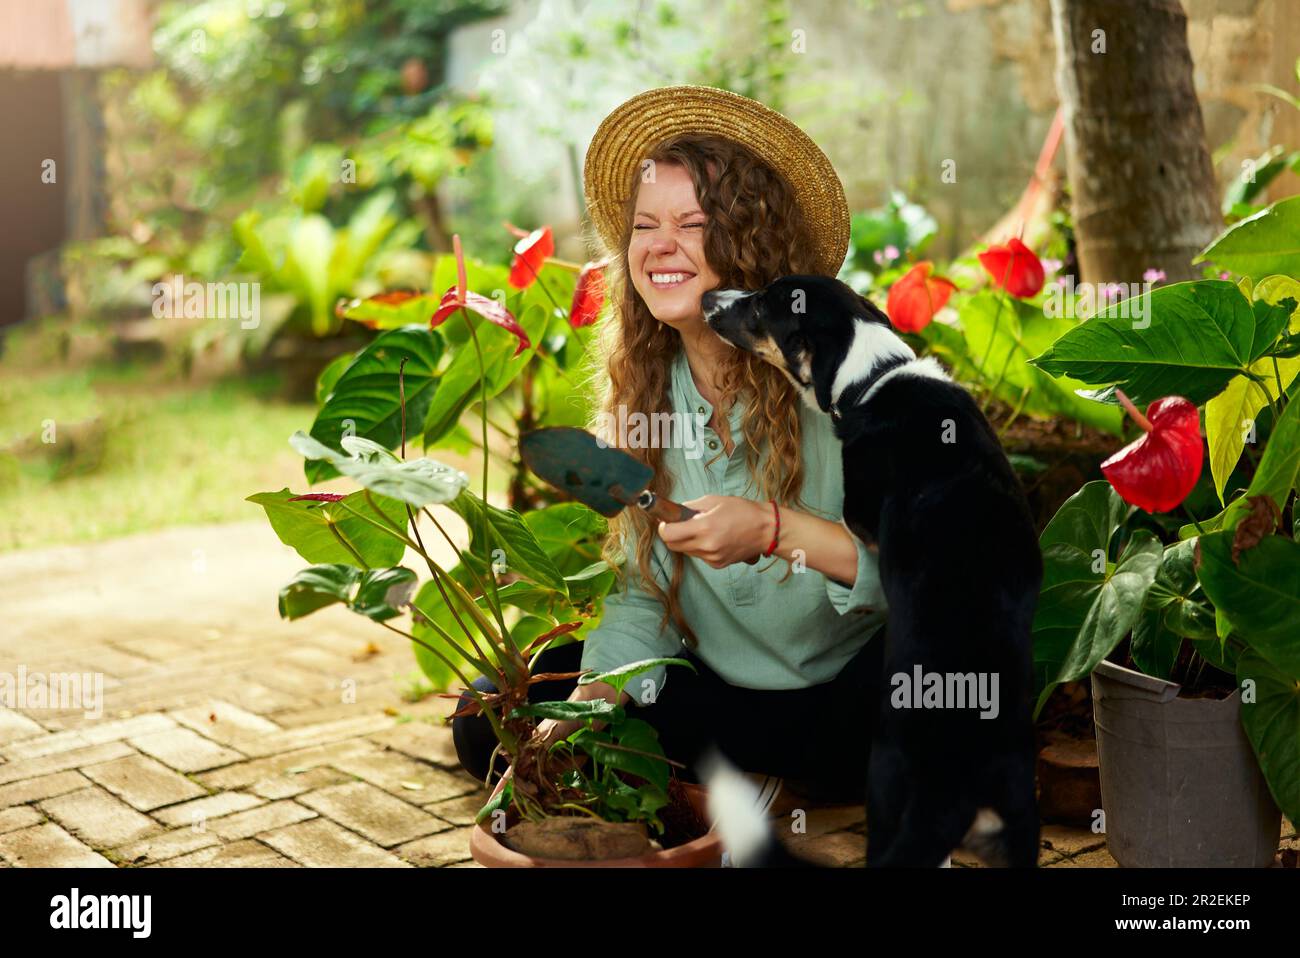 Une jeune femme se câlin et se moque avec son chien qui rit. Jardinier caucasien avec truelle plantant des fleurs dans des pots dans son jardin souriant Banque D'Images